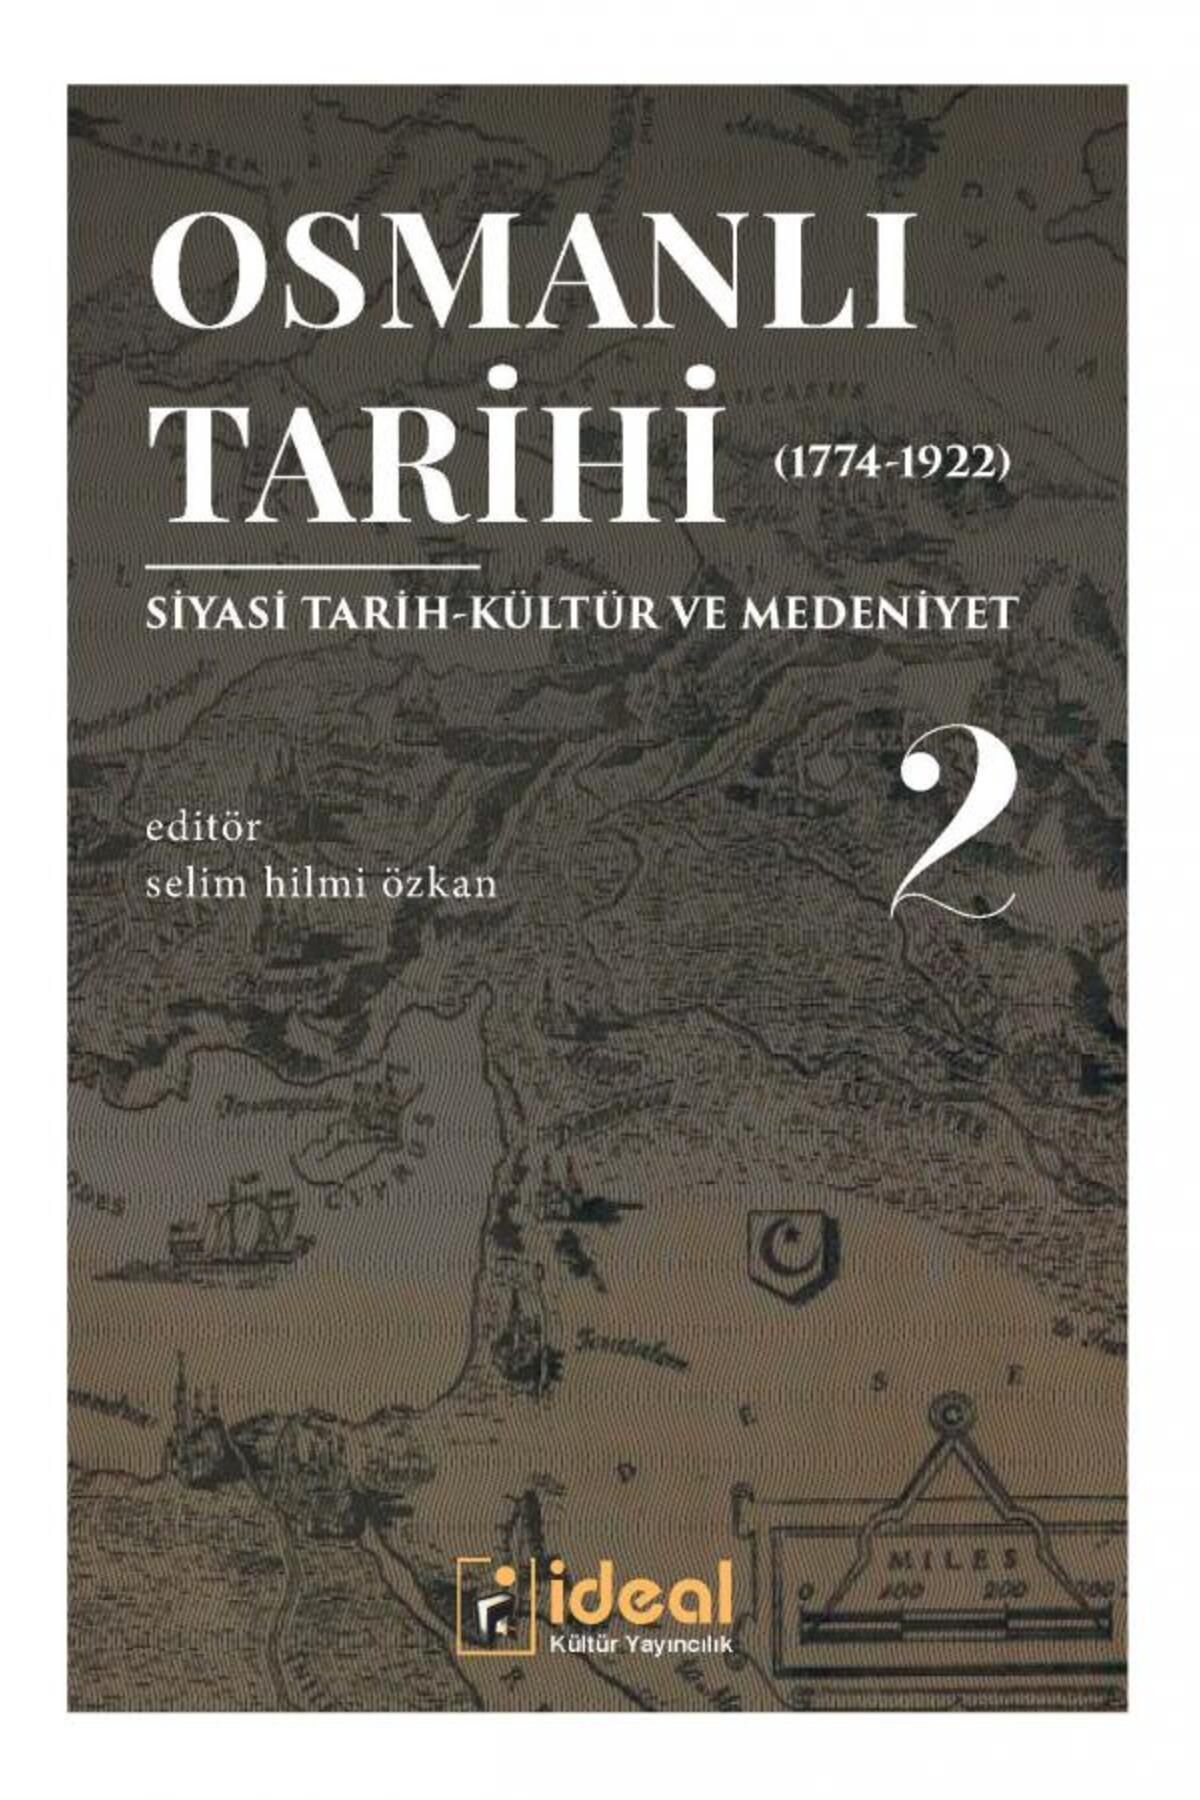 İdeal Kültür Yayıncılık Osmanlı Tarihi-2 (1774-1922) kitabı - Ahmet Ali Gazel,Gürsoy Şahin,Hamza Altın,İbrahim Şirin,İbrahim